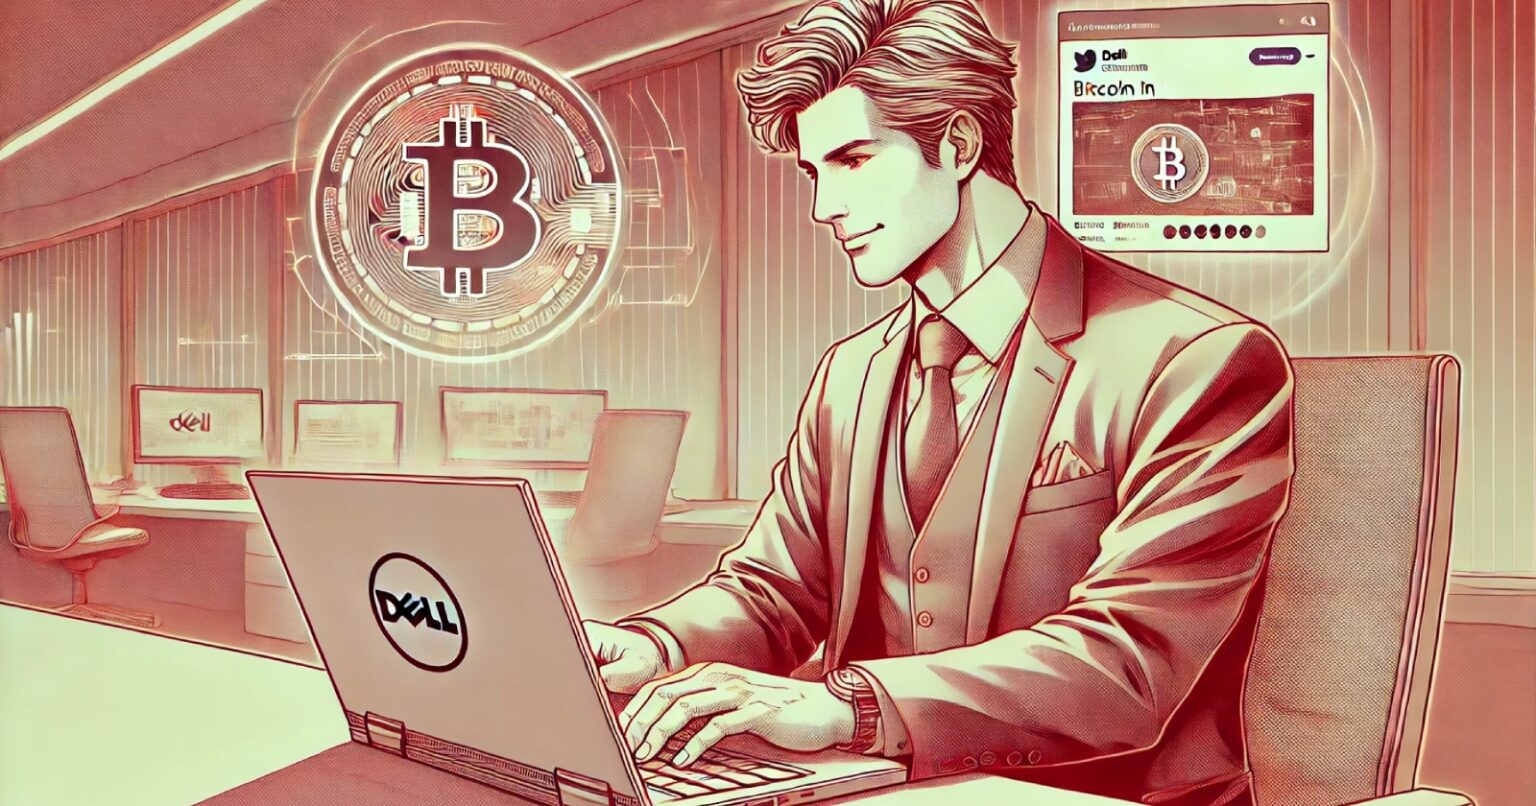 CEO da Dell, Michael Dell, sugere interesse em Bitcoin com retweet de Michael Saylor